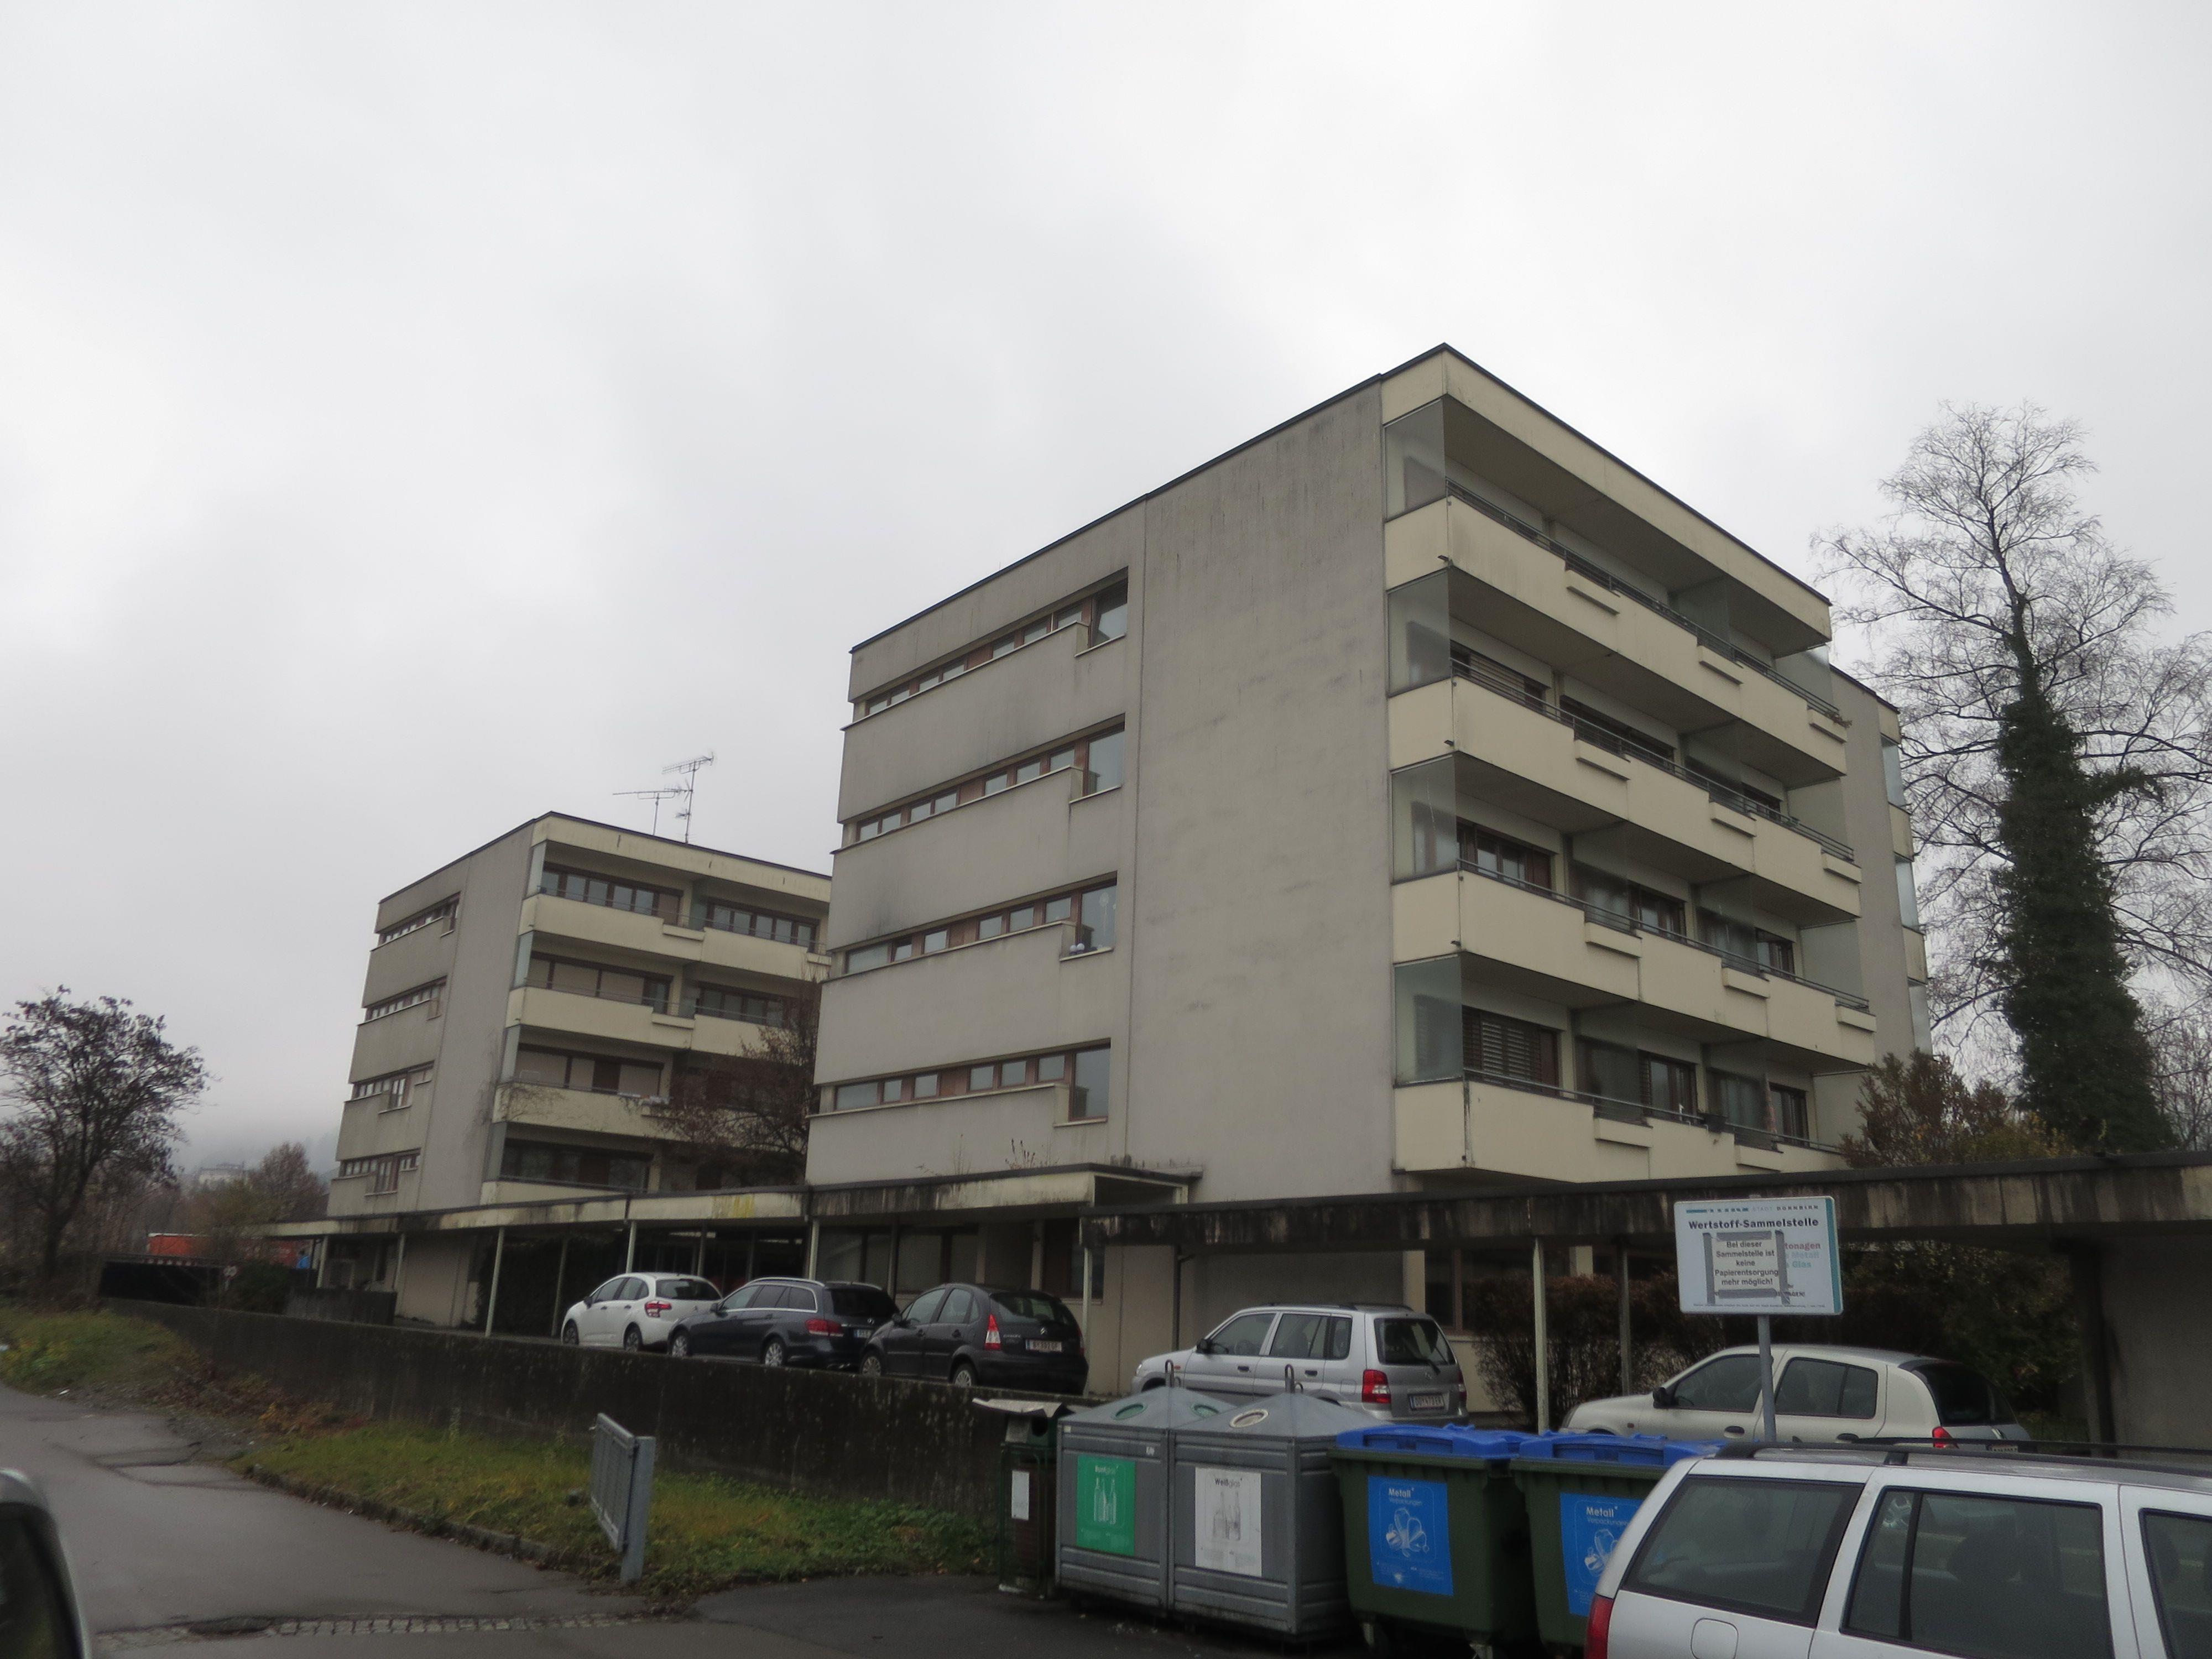 Die 50 Jahre alten Personalhäuser der Hinteren Achühlerstraße sind abbruchreif.